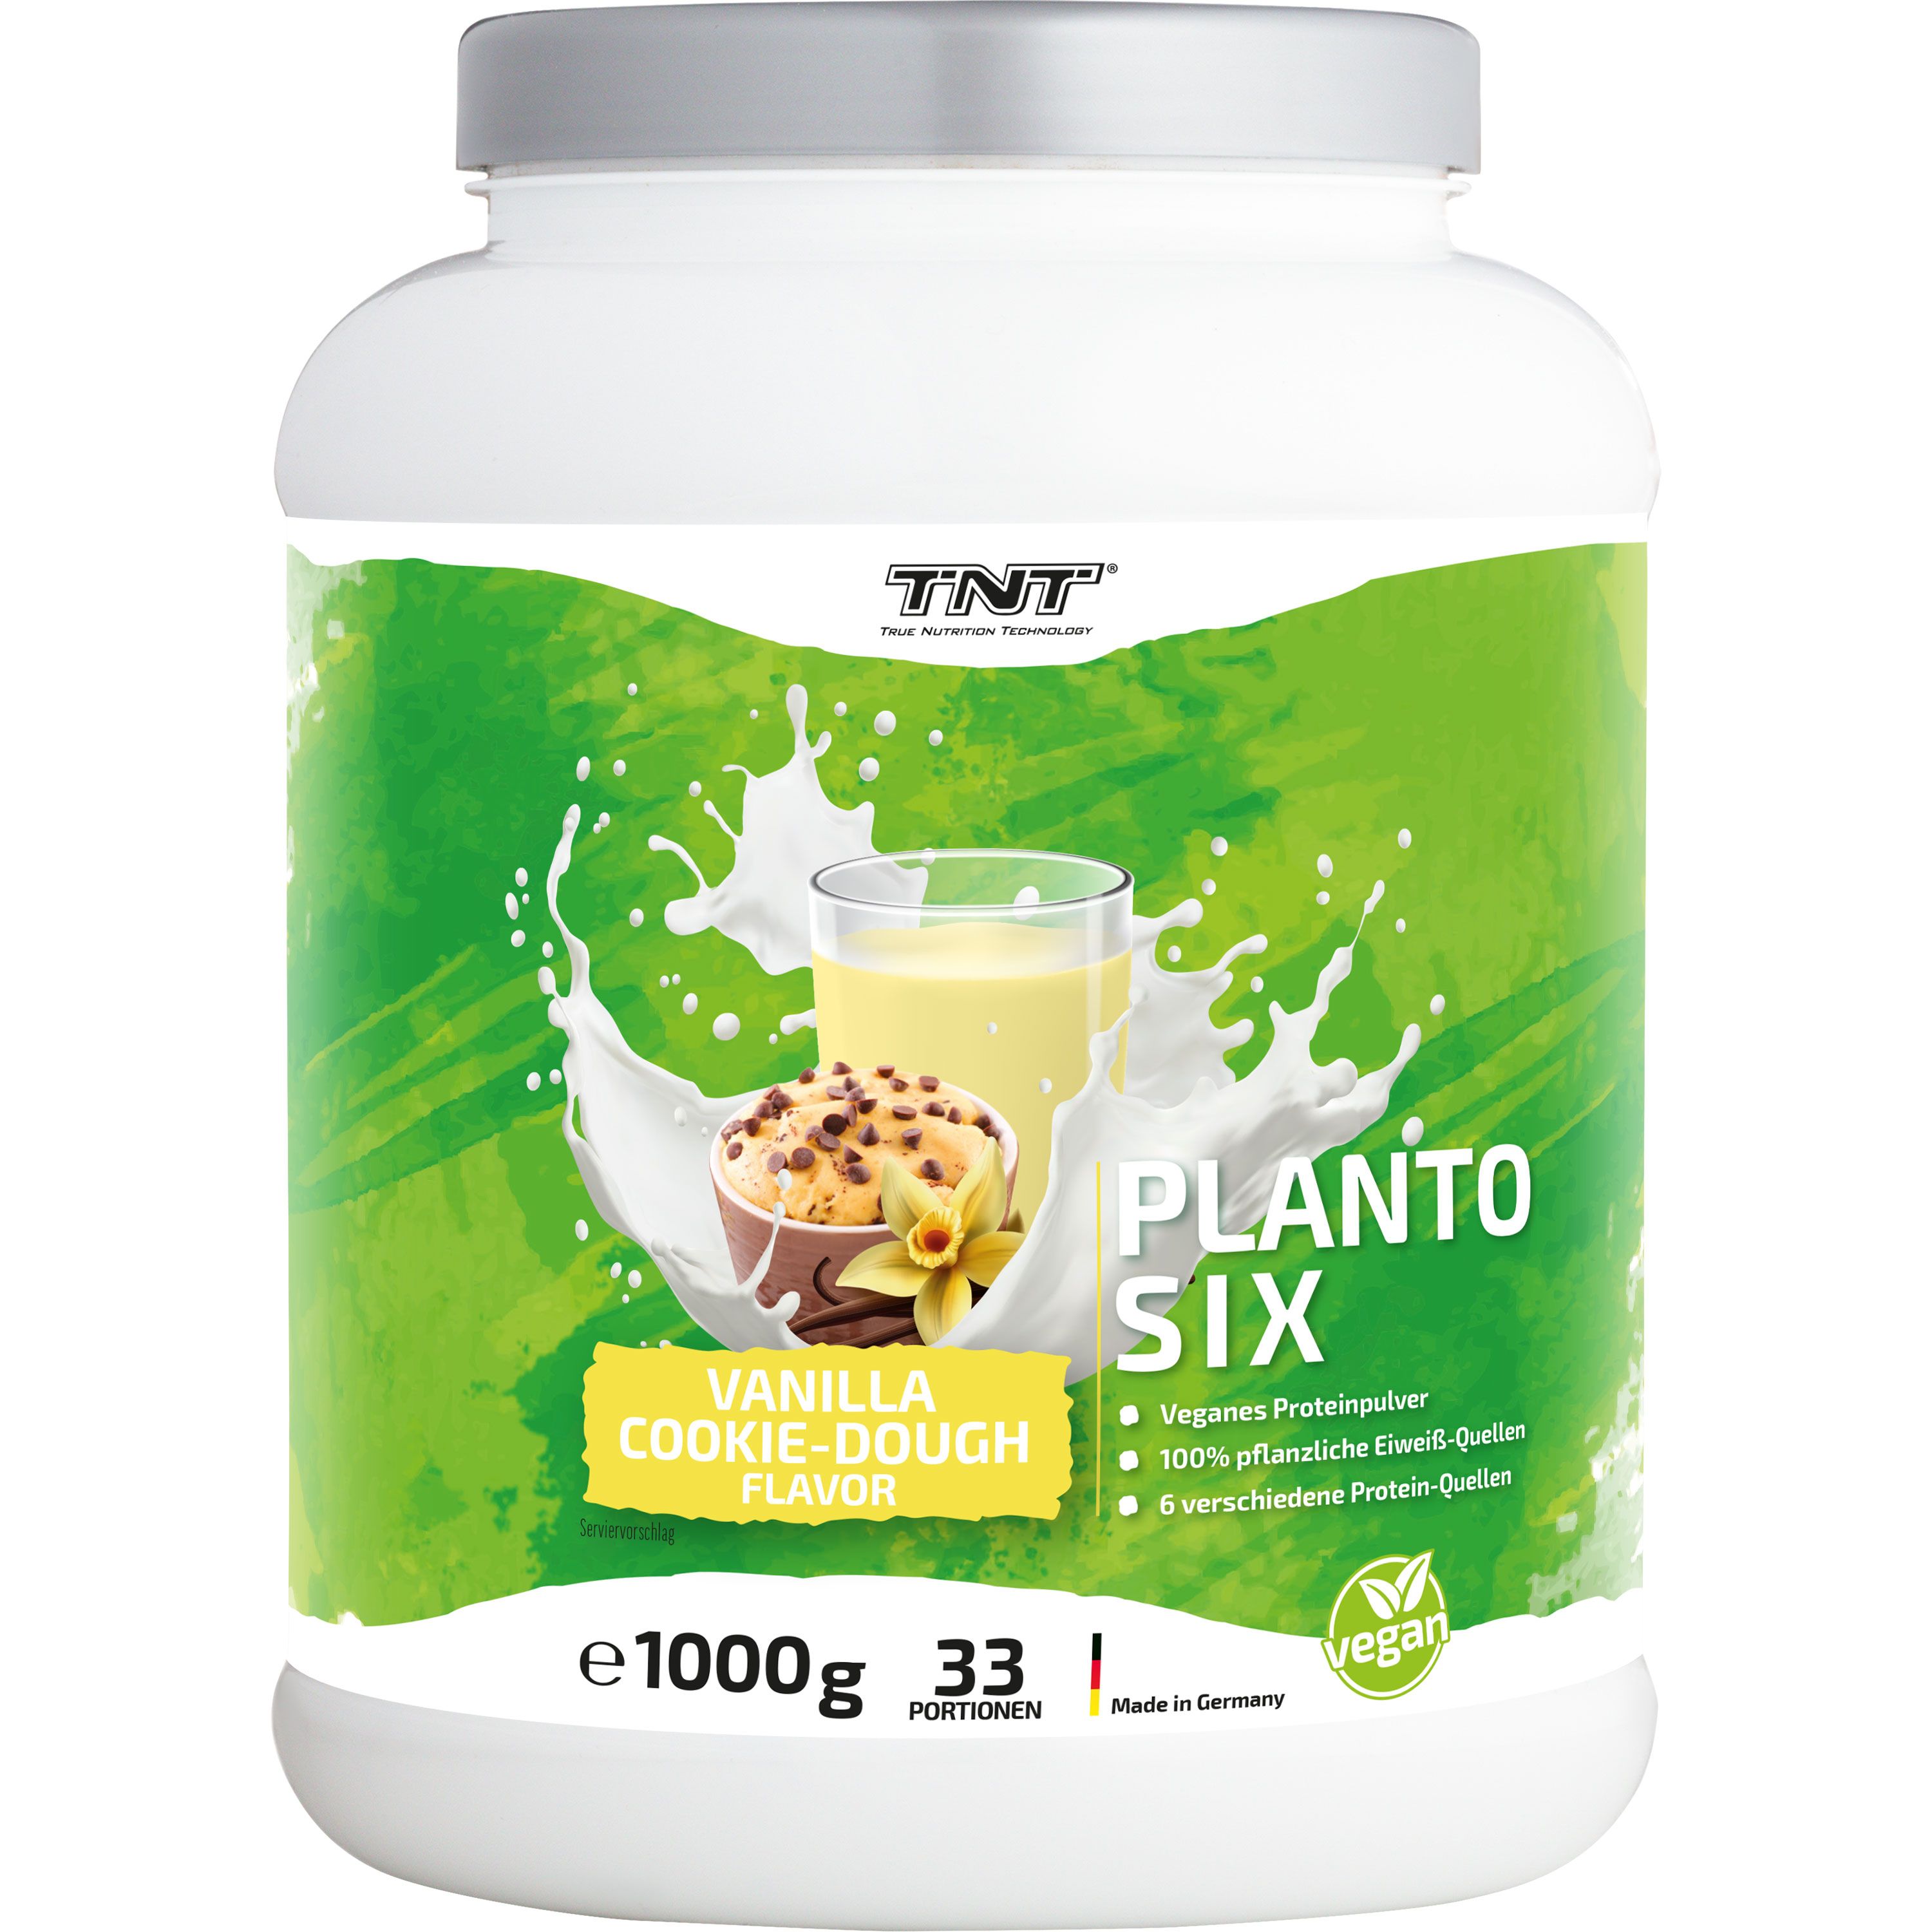 TNT Planto Six - pflanzliches Mehrkomponenten Protein